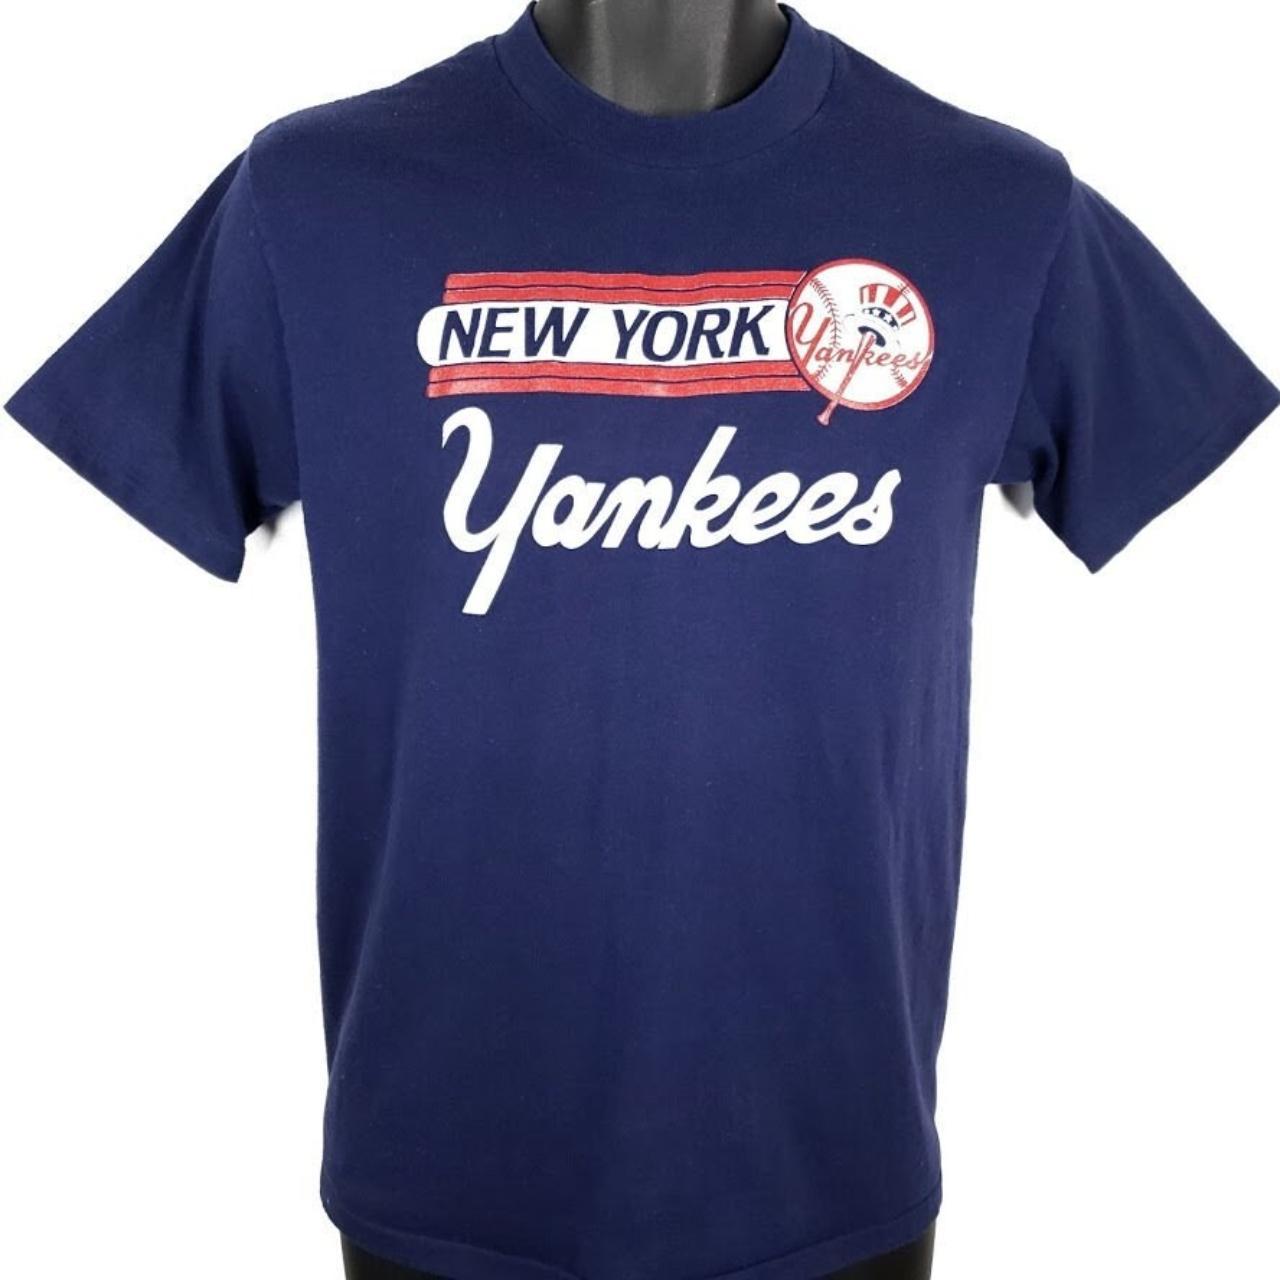 Vintage 1980s New York Yankees Baseball Logo T-Shirt  New york yankees  baseball, New york yankees, Yankees baseball